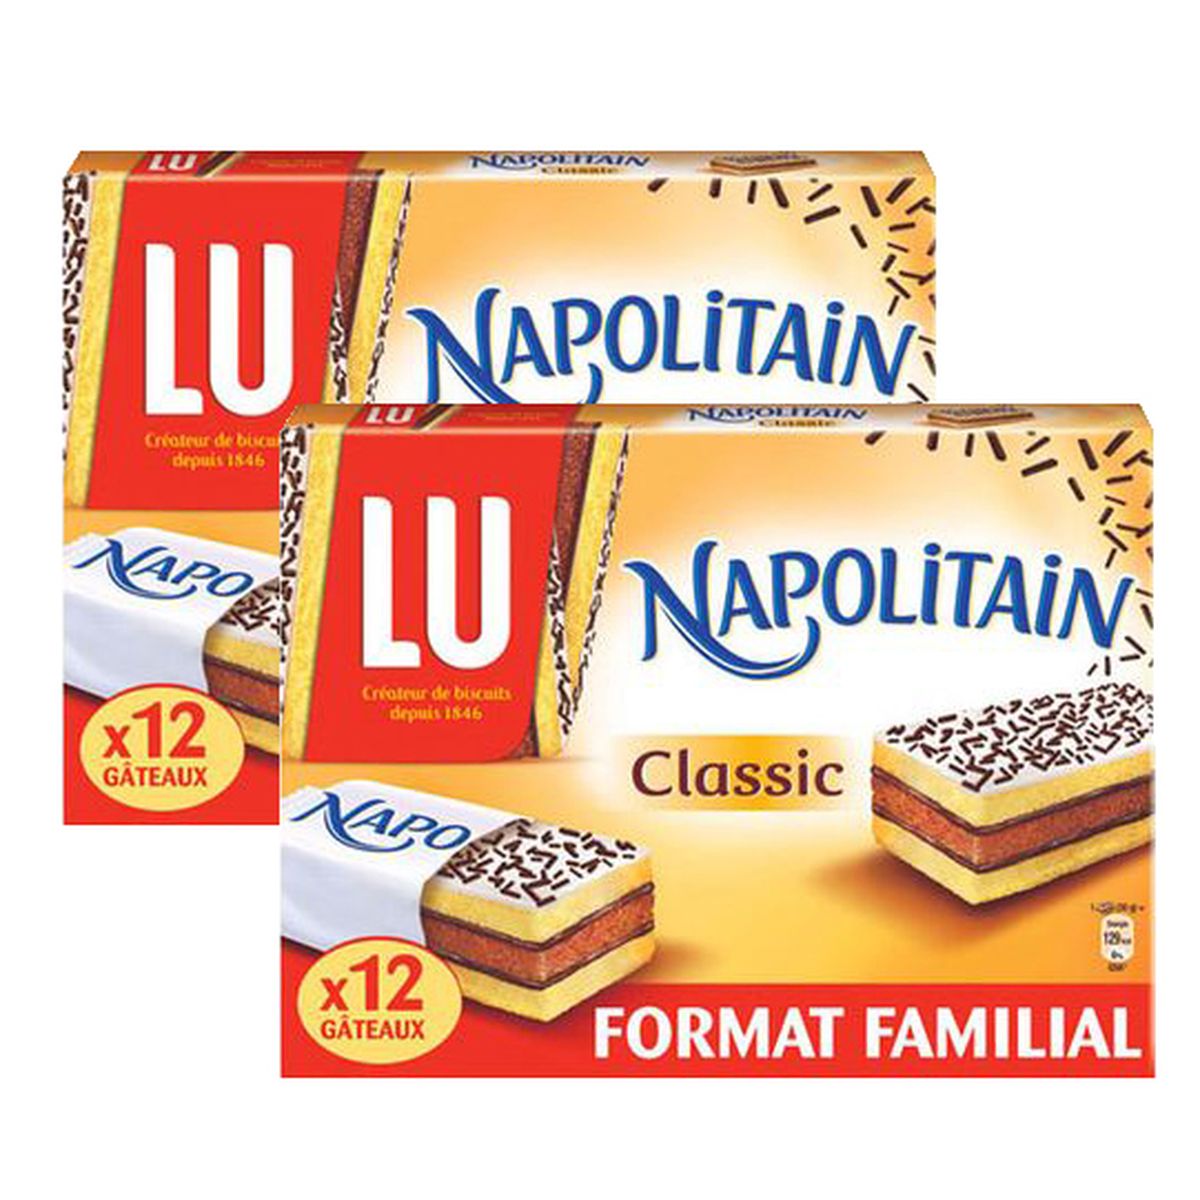 LU Napolitain Gâteau classique x12 360g 